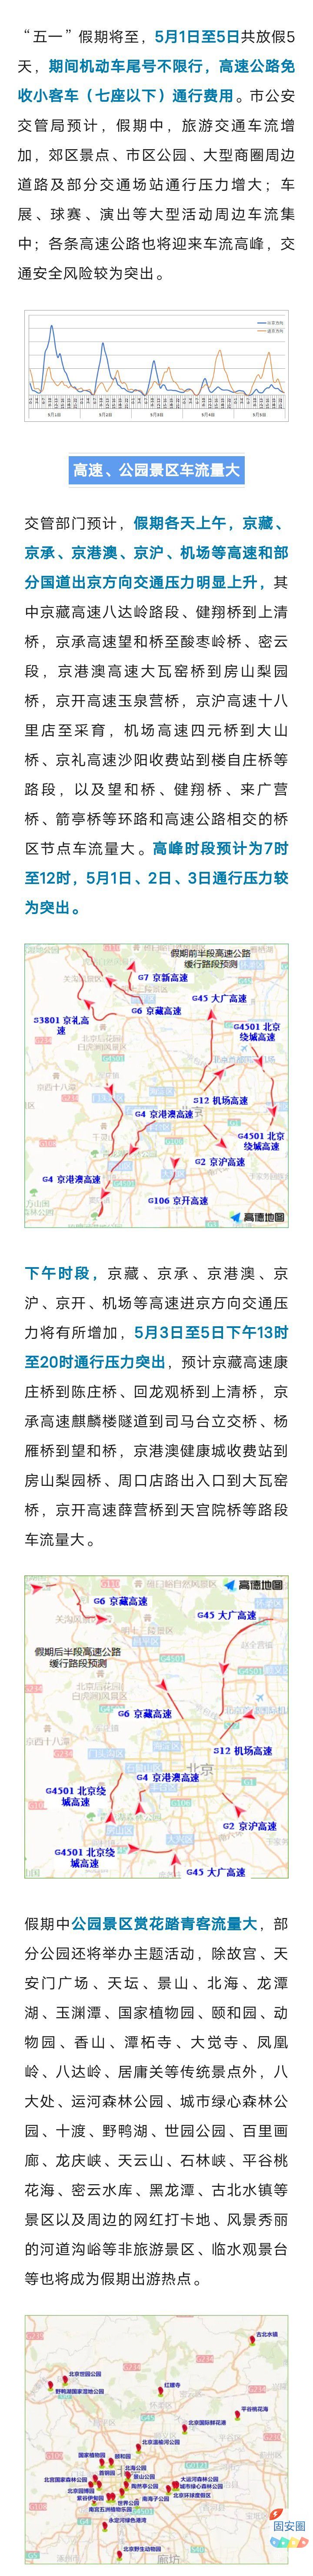 五一假期，高速免费通行！北京多条地铁延长运营——8678 作者:乁沙漠 帖子ID:305682 